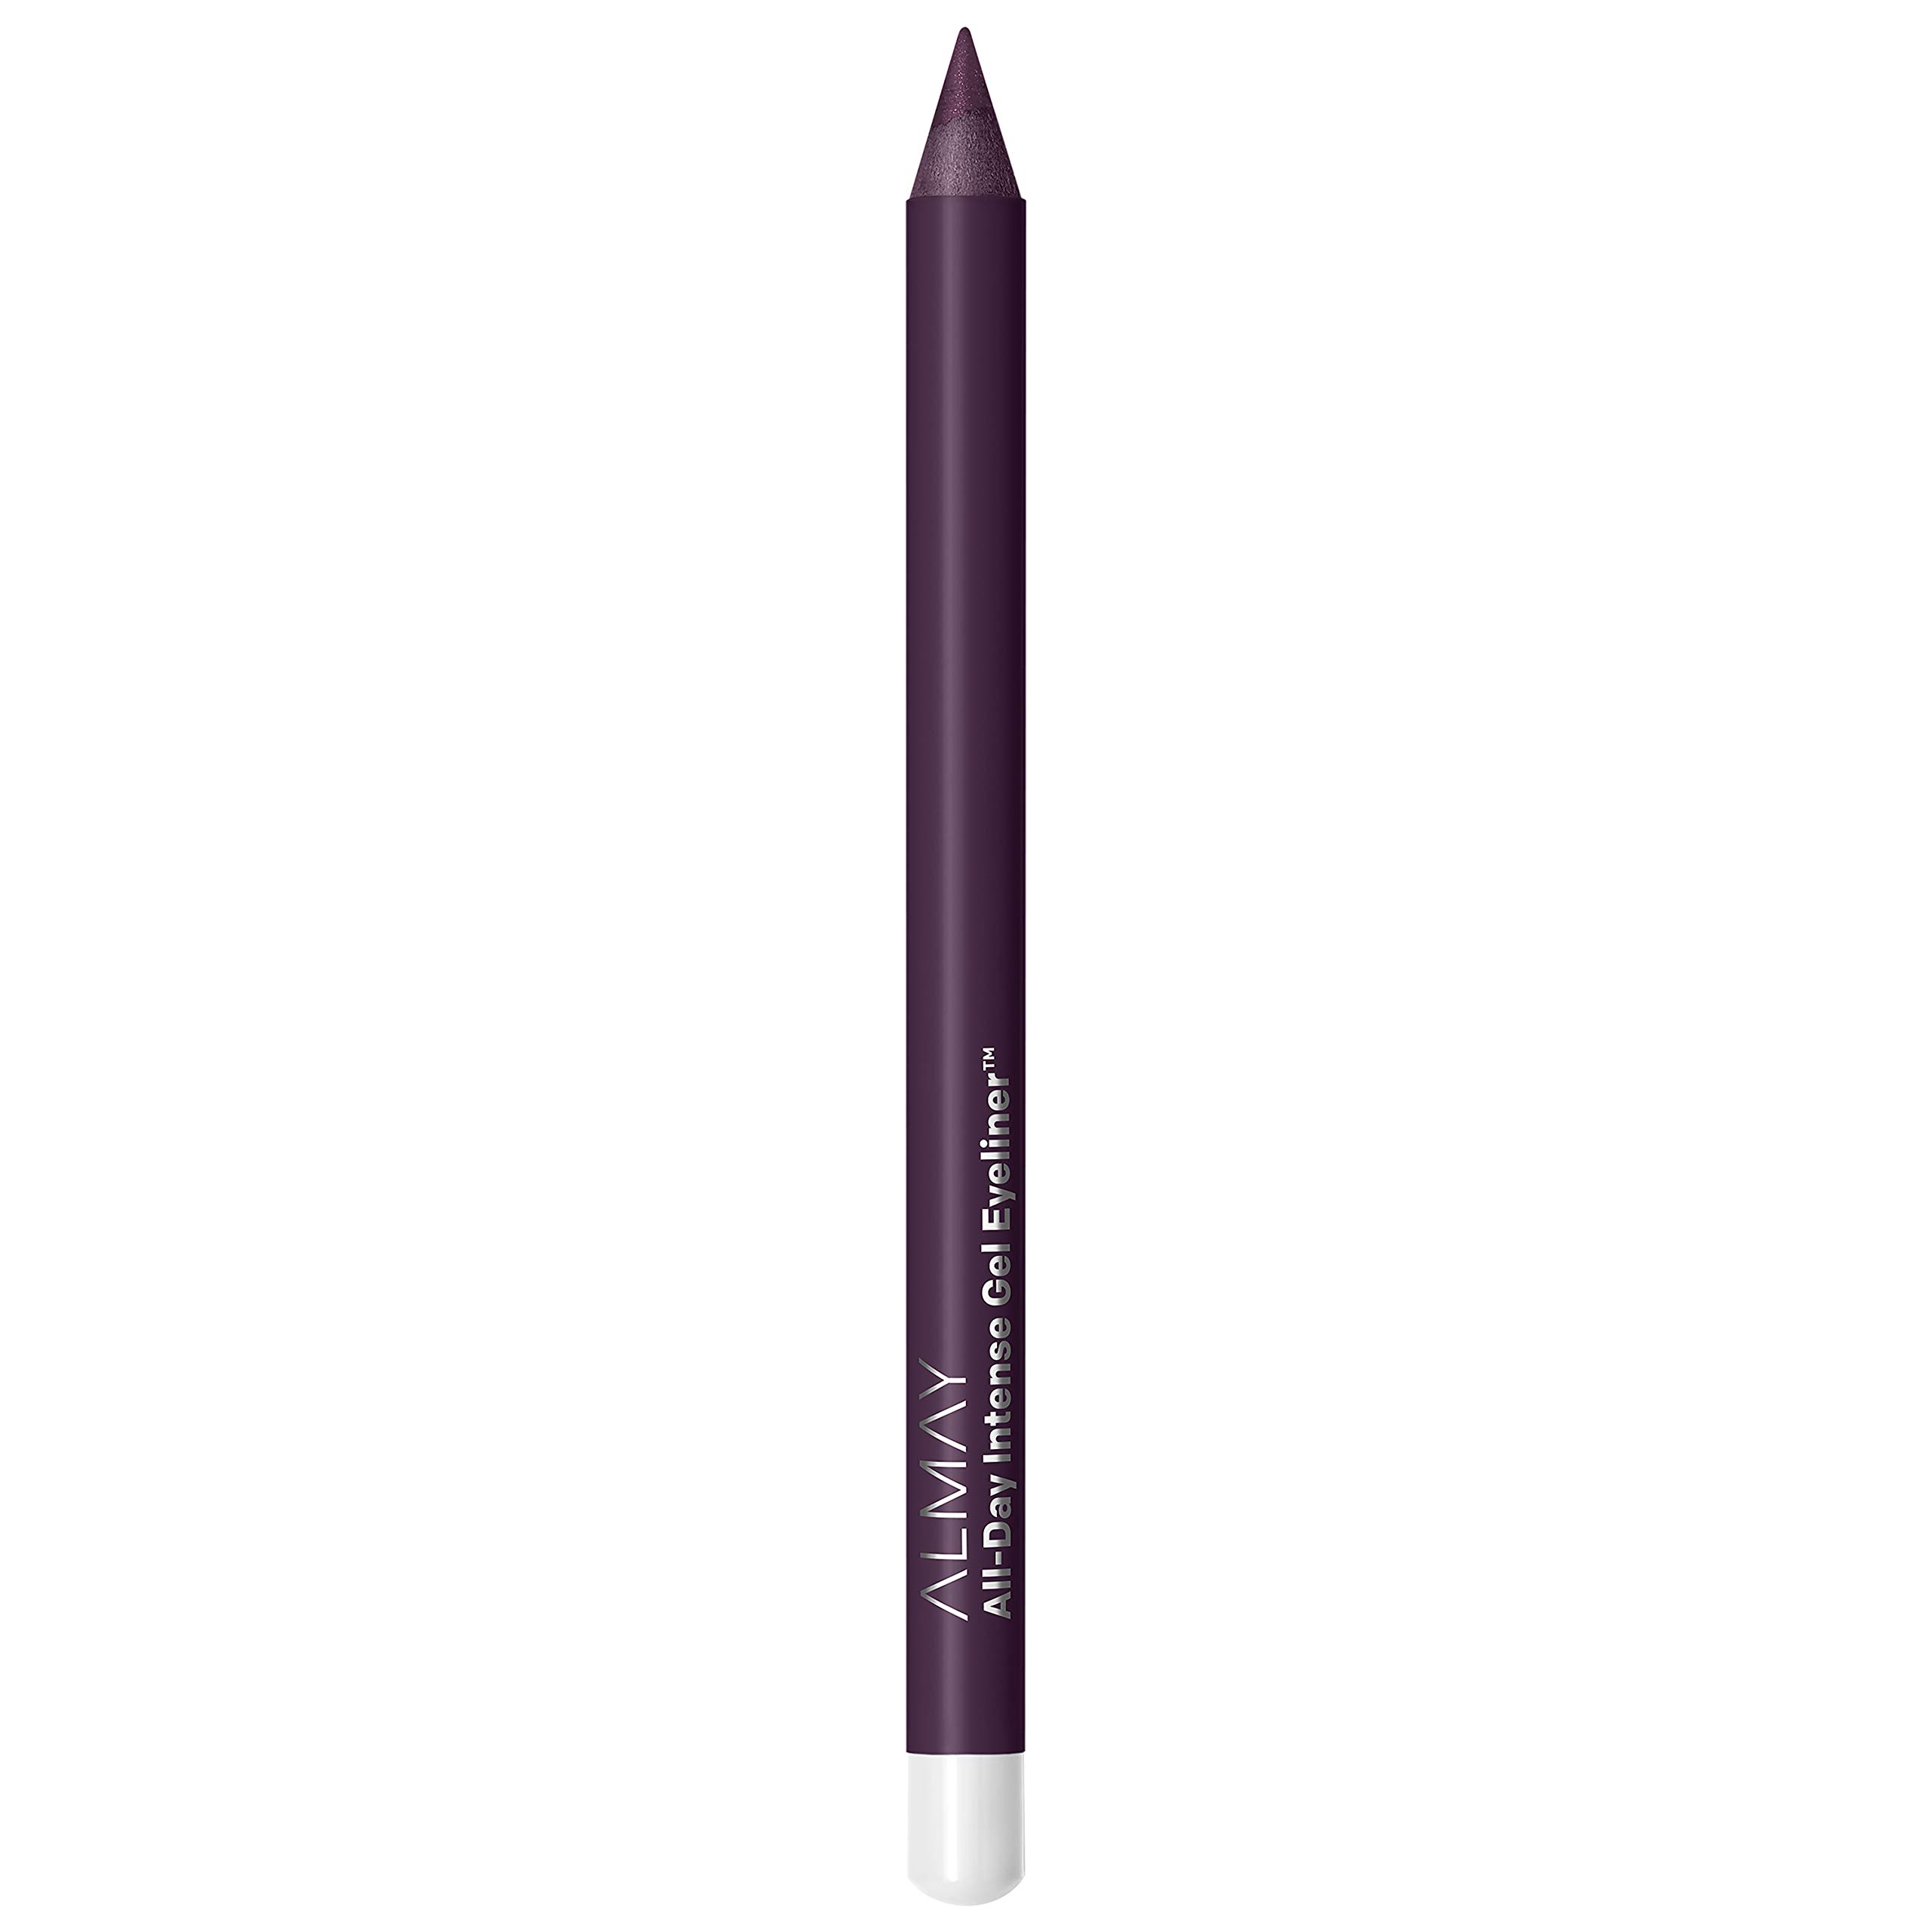 Gel Eyeliner by Almay, Waterproof, Fade-Proof Eye Makeup, Easy-to-Sharpen Liner Pencil, 130 Pure Plum, 0.045 Oz